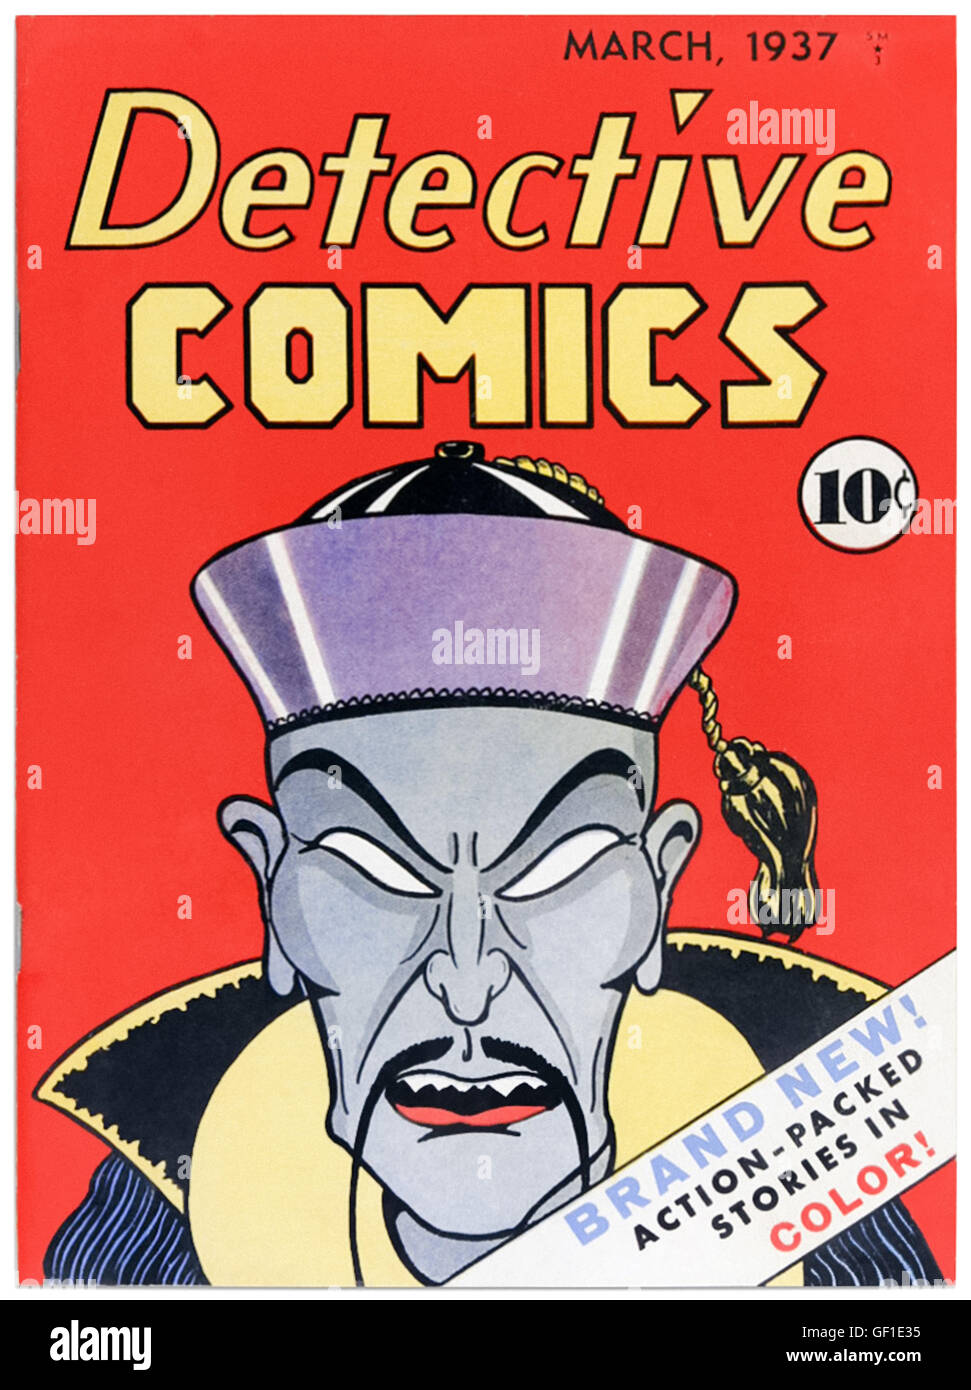 Detective Comics Ausgabe 1 März 1937, der Titel, der "DC Comics", mit Cover-Art von Vin Sullivan (1911-1999) mit der 1930er Jahre "gelbe Gefahr" Stereotyp Bösewicht namens Chin Lung, in der Mode zu der Zeit aufgrund der Popularität von Sax Rohmer Meister kriminellen Dr. Fu Manchu benannt. Siehe Beschreibung für mehr Informationen. Stockfoto